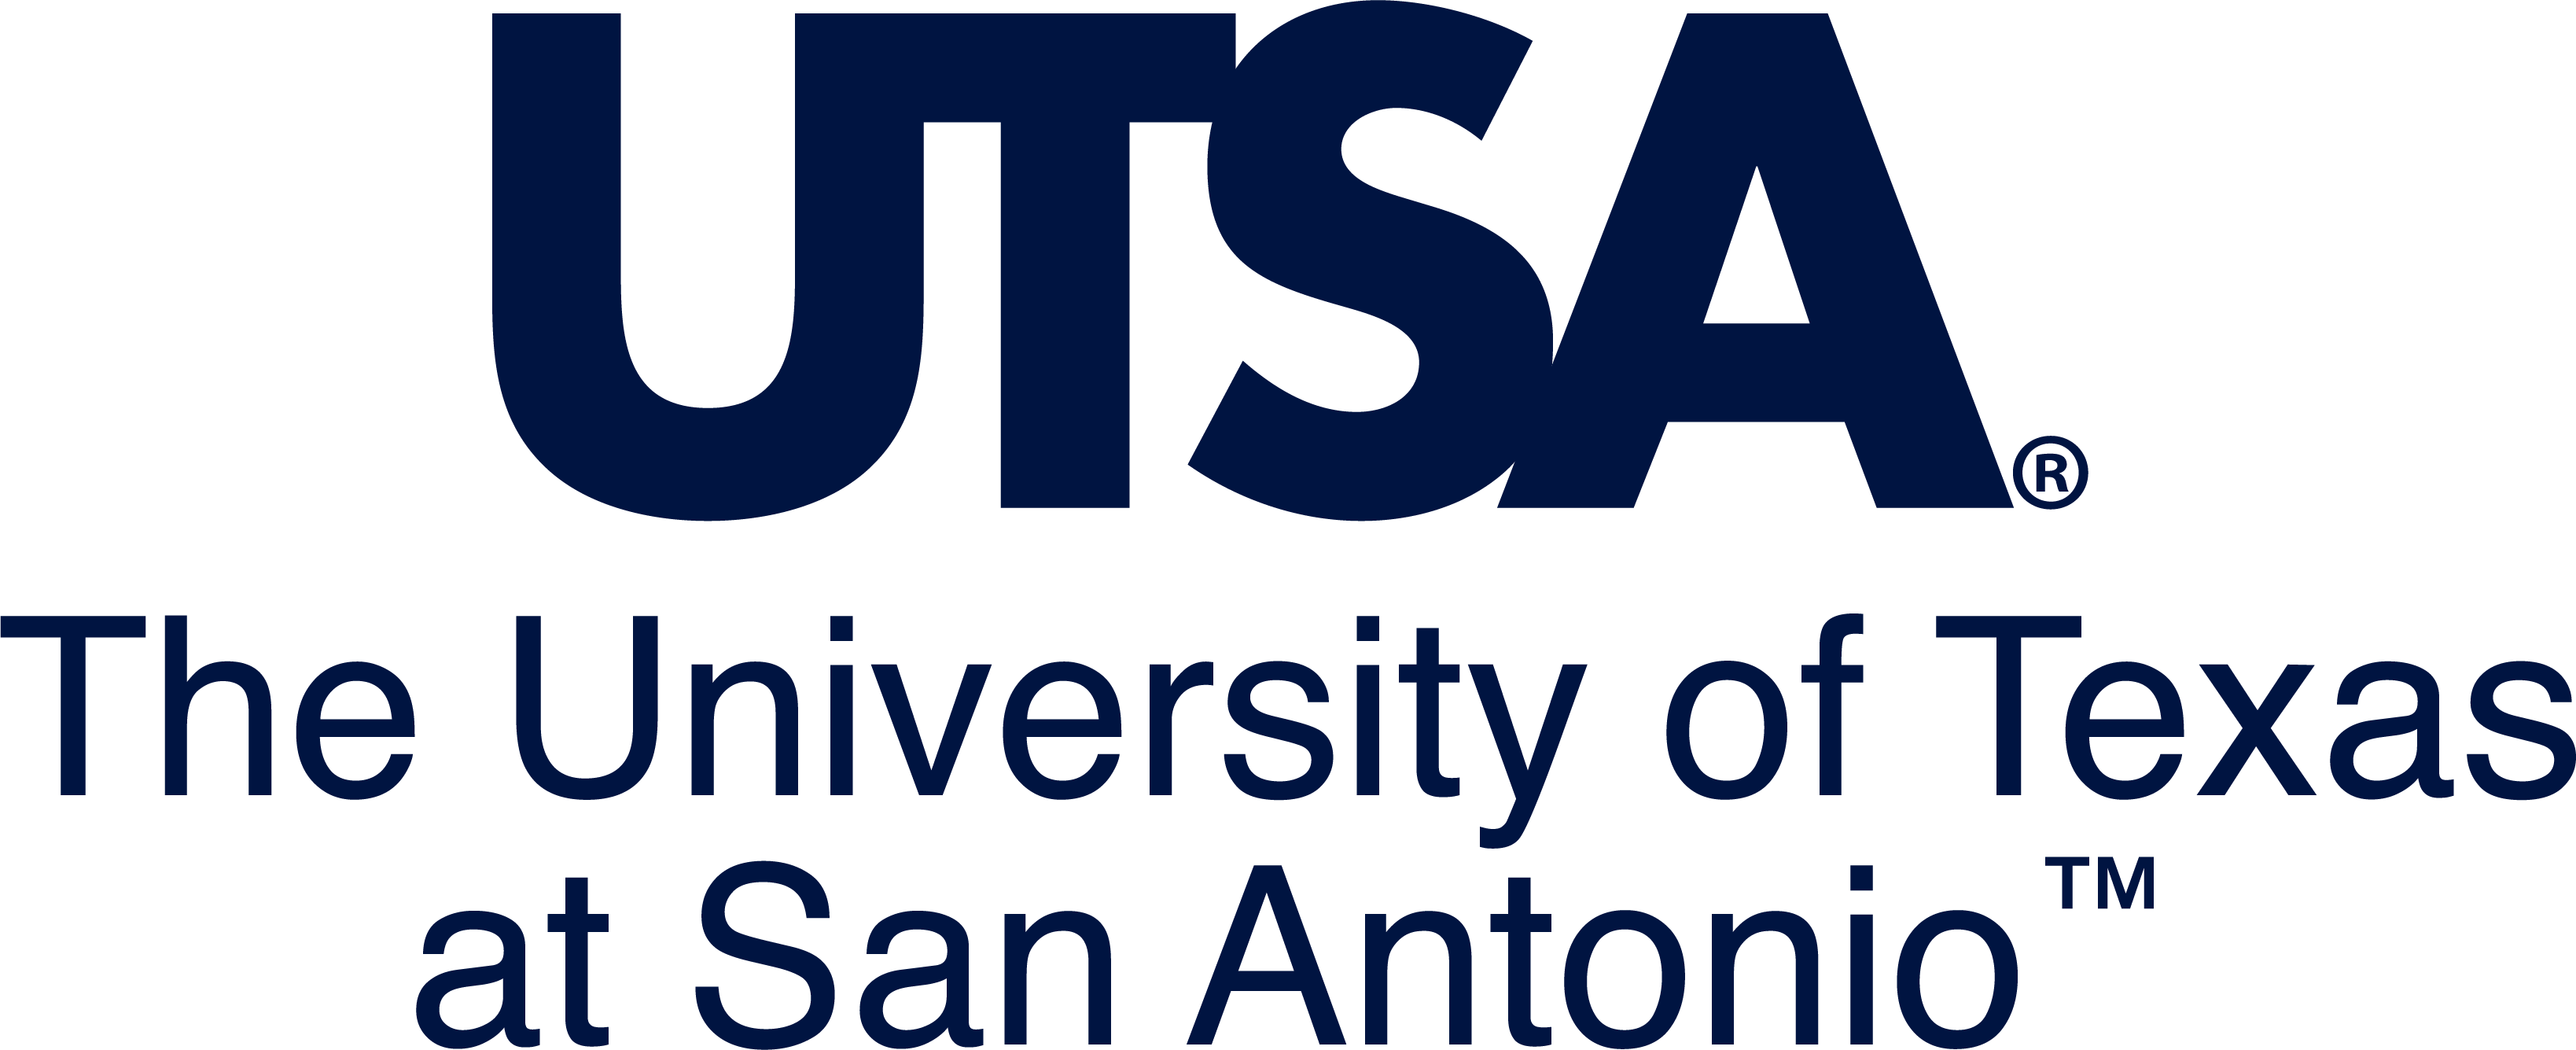 UTSA-logo-stacked_Blue.png